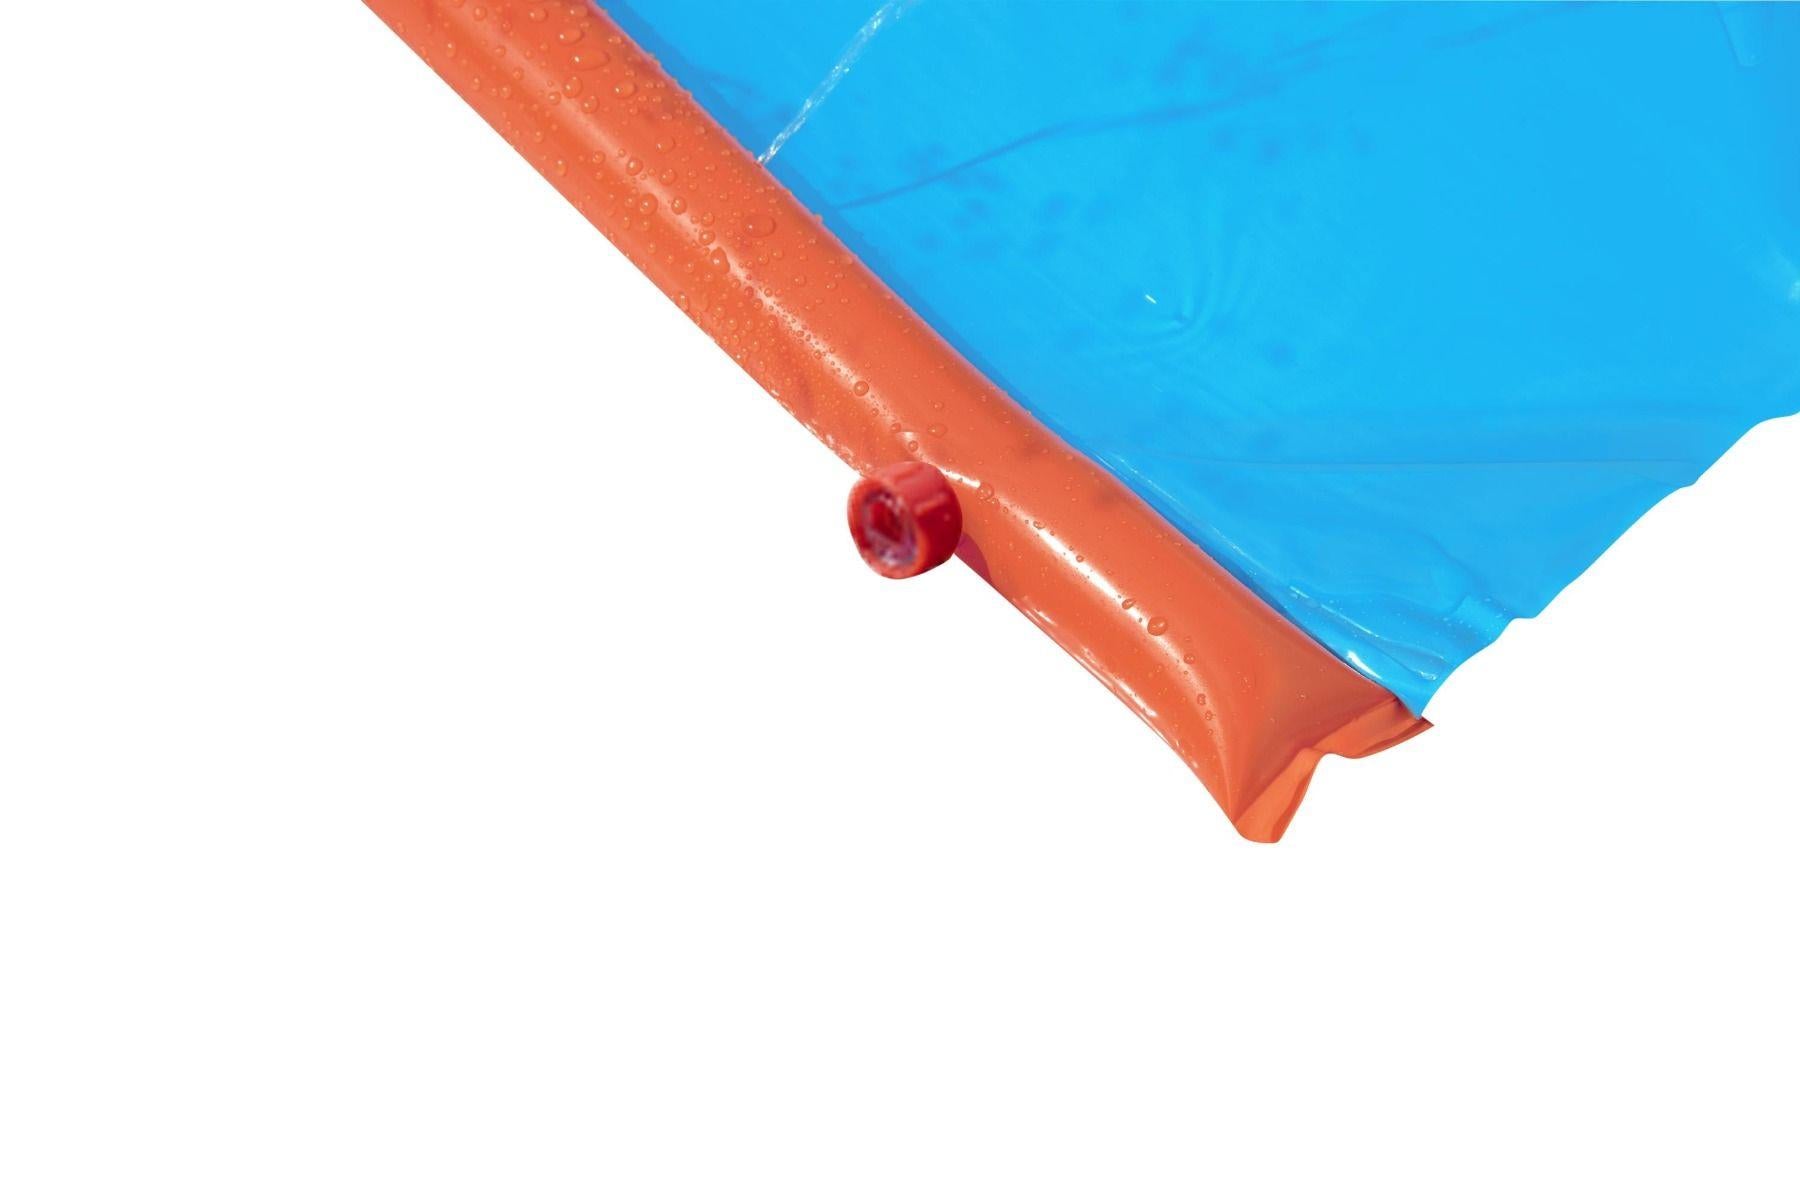 H2O Go Water Slider 4.88m 16ft Slip & Slide Sprinkler Water Toy